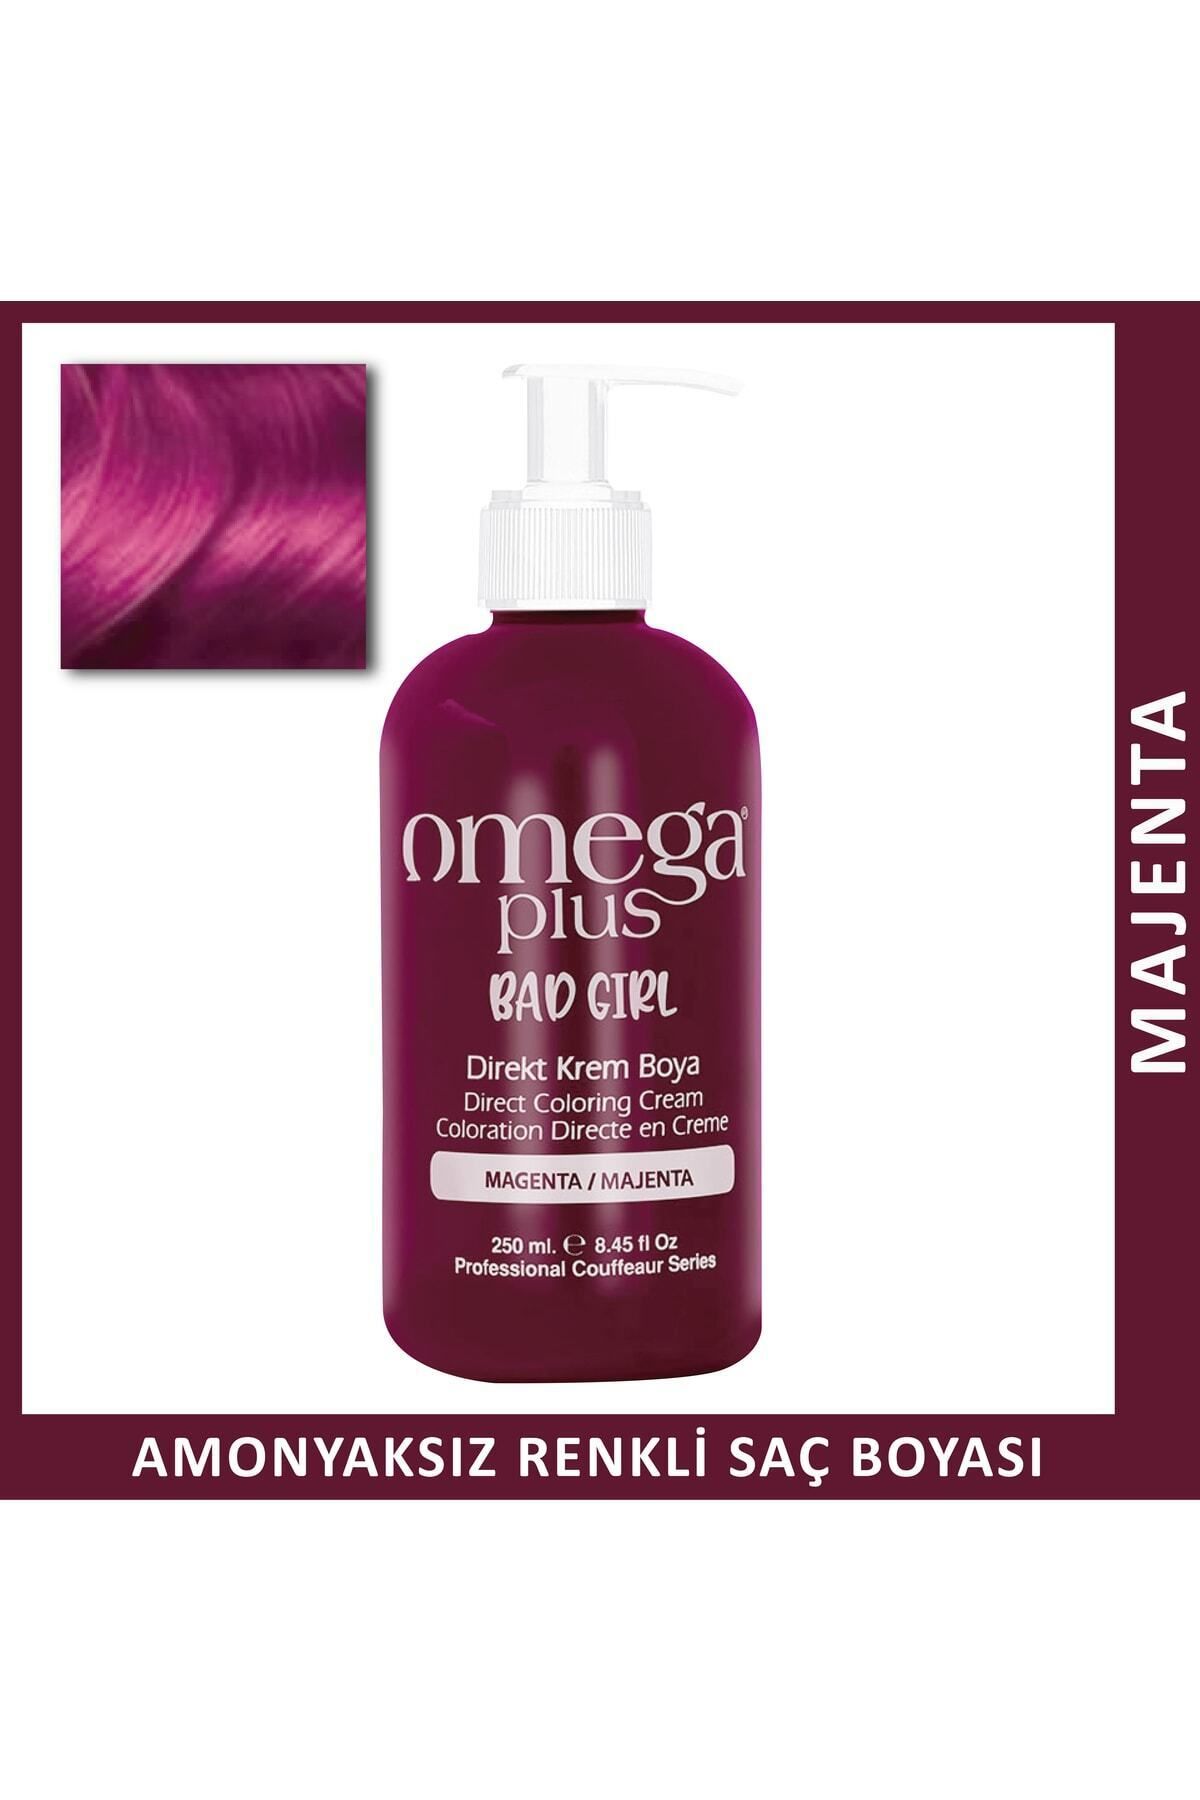 Omega Plus Bad Girl MAJENTA Amonyaksız Renkli Saç Boyası 250ML